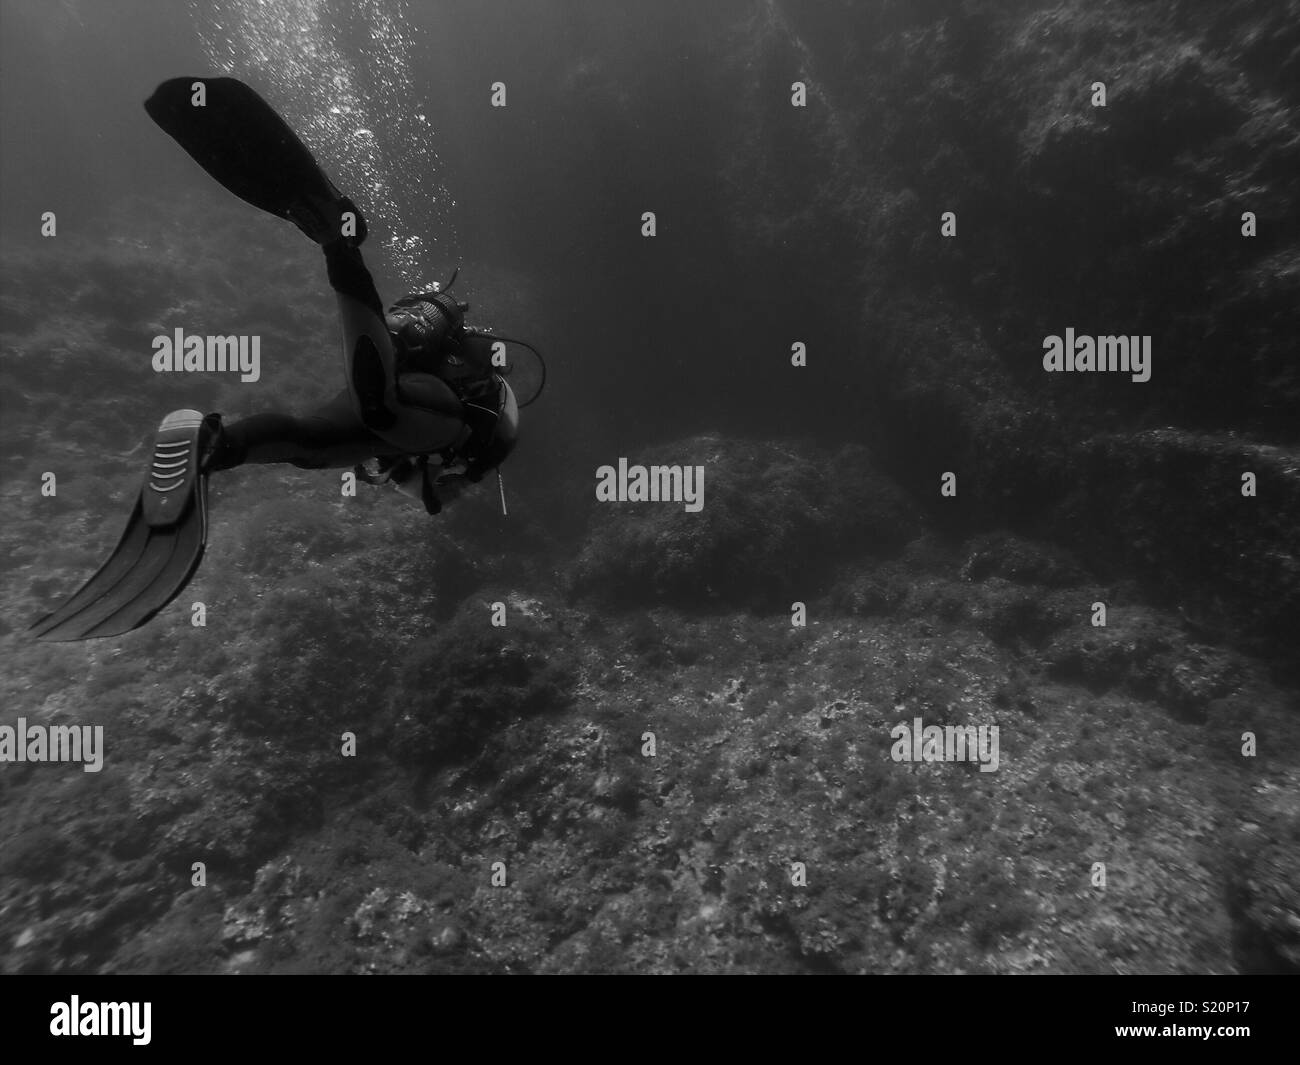 Black and White Scuba Diver Stock Photo - Alamy